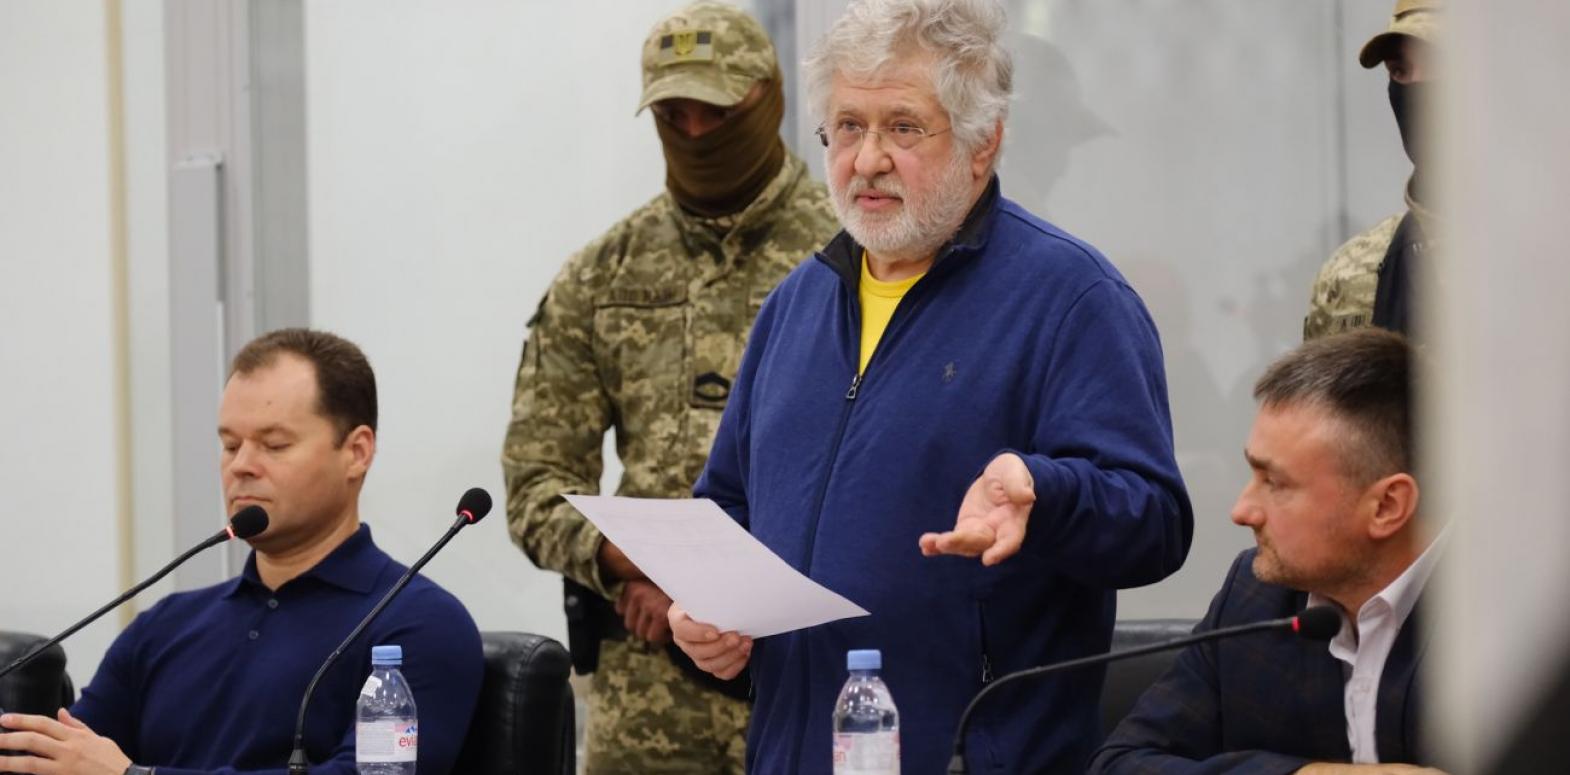 Международное общество по правам человека заявило о существенных нарушениях прав Коломойского